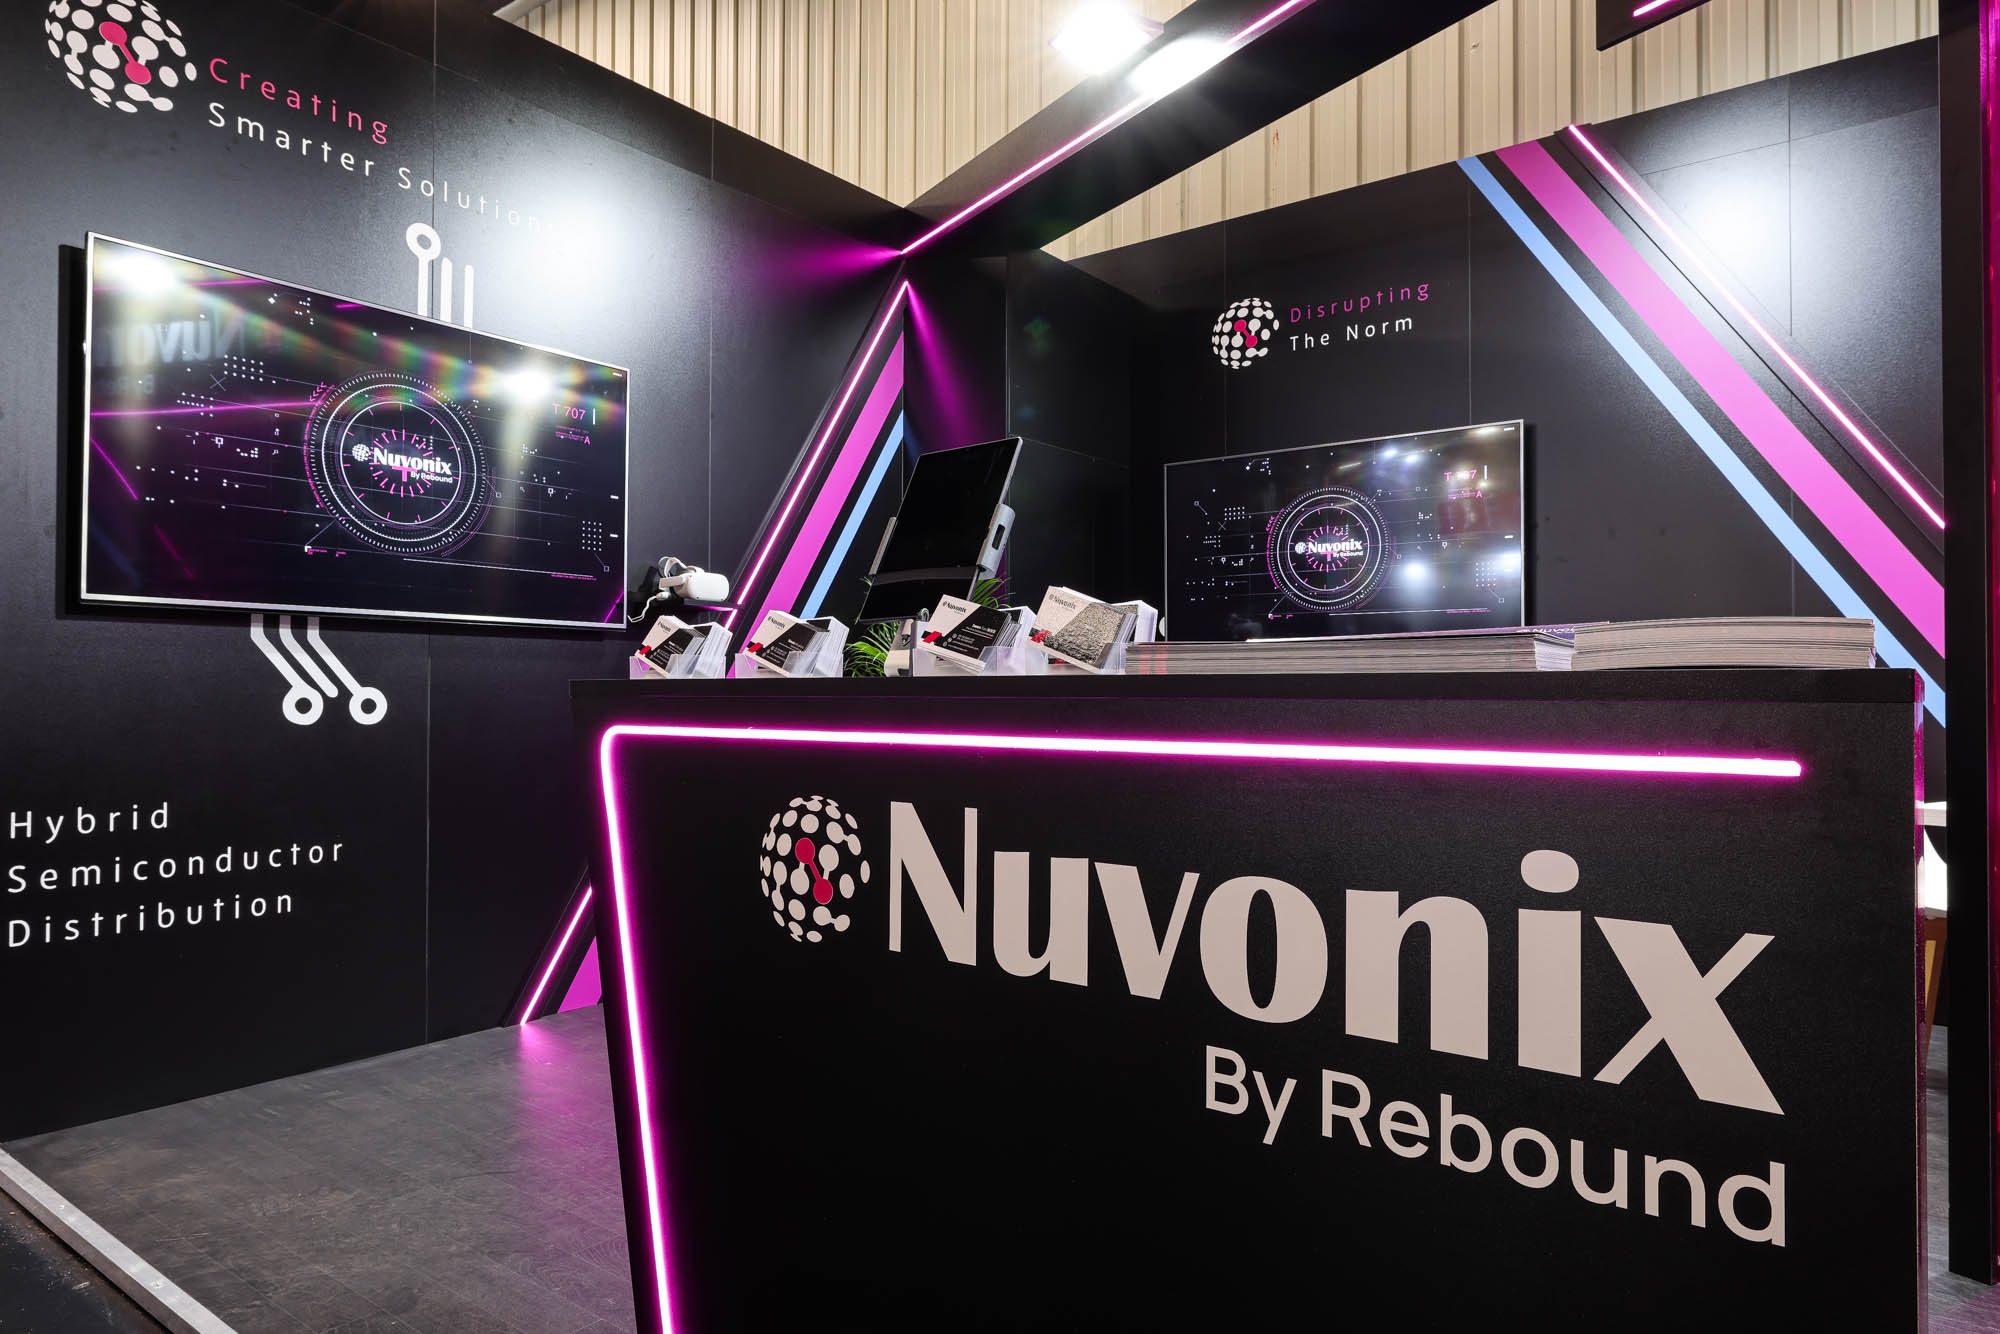 Nuvonix by Rebound trabaja para ayudar a los clientes a construir cadenas de suministro más resistentes y de menor costo